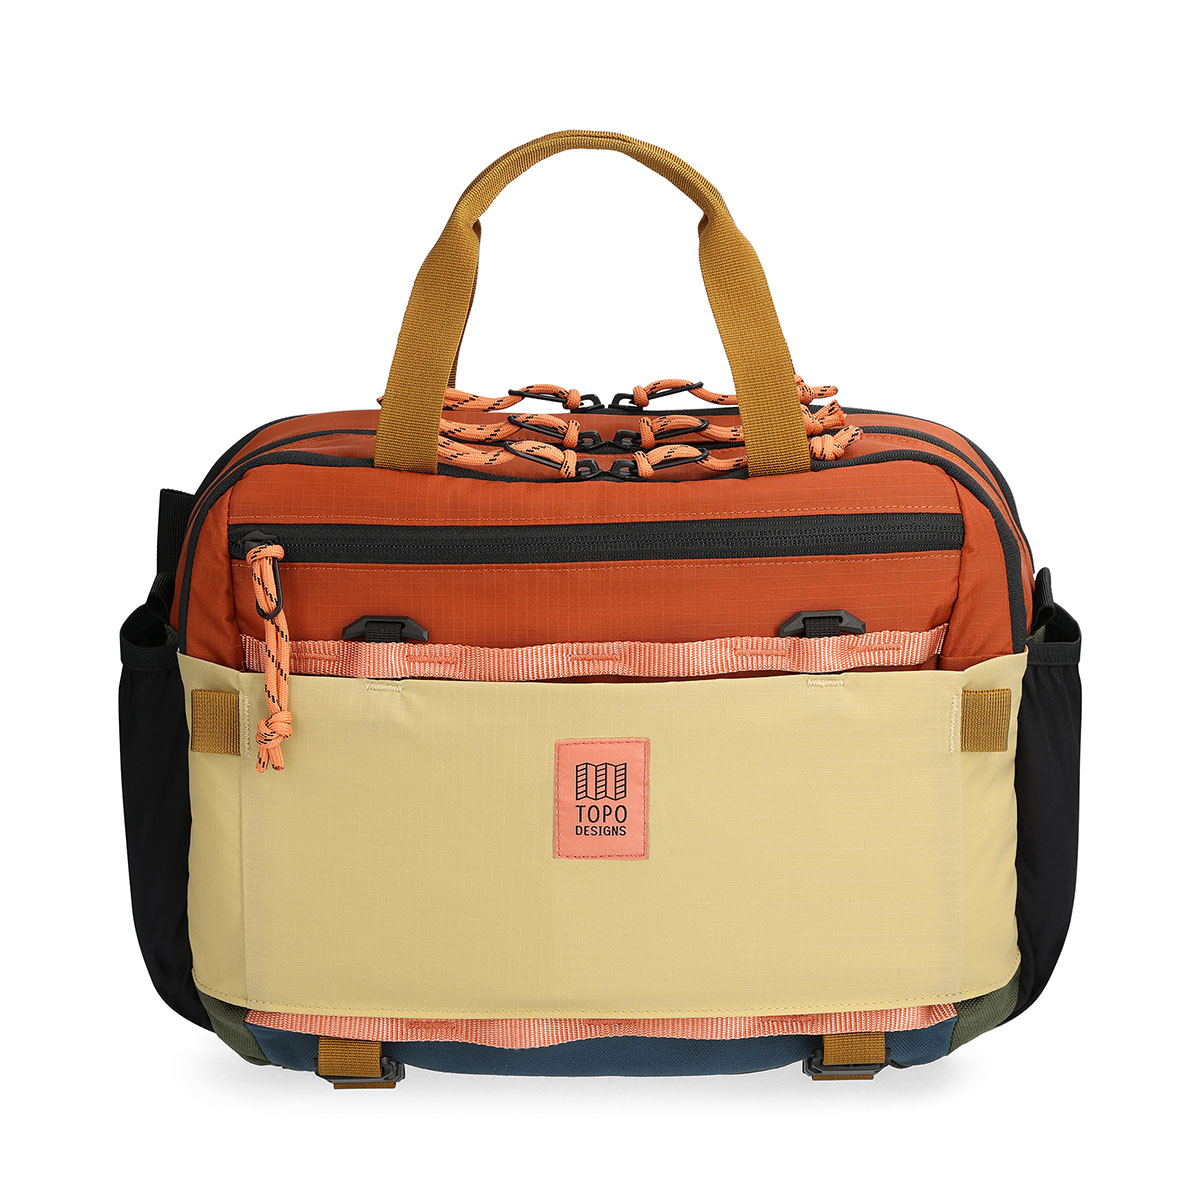 Topo Designs Mountain Cross Bag Clay/Hemp, ideale sling bag in messengerstijl voor dagelijks gebruik en nog veel meer